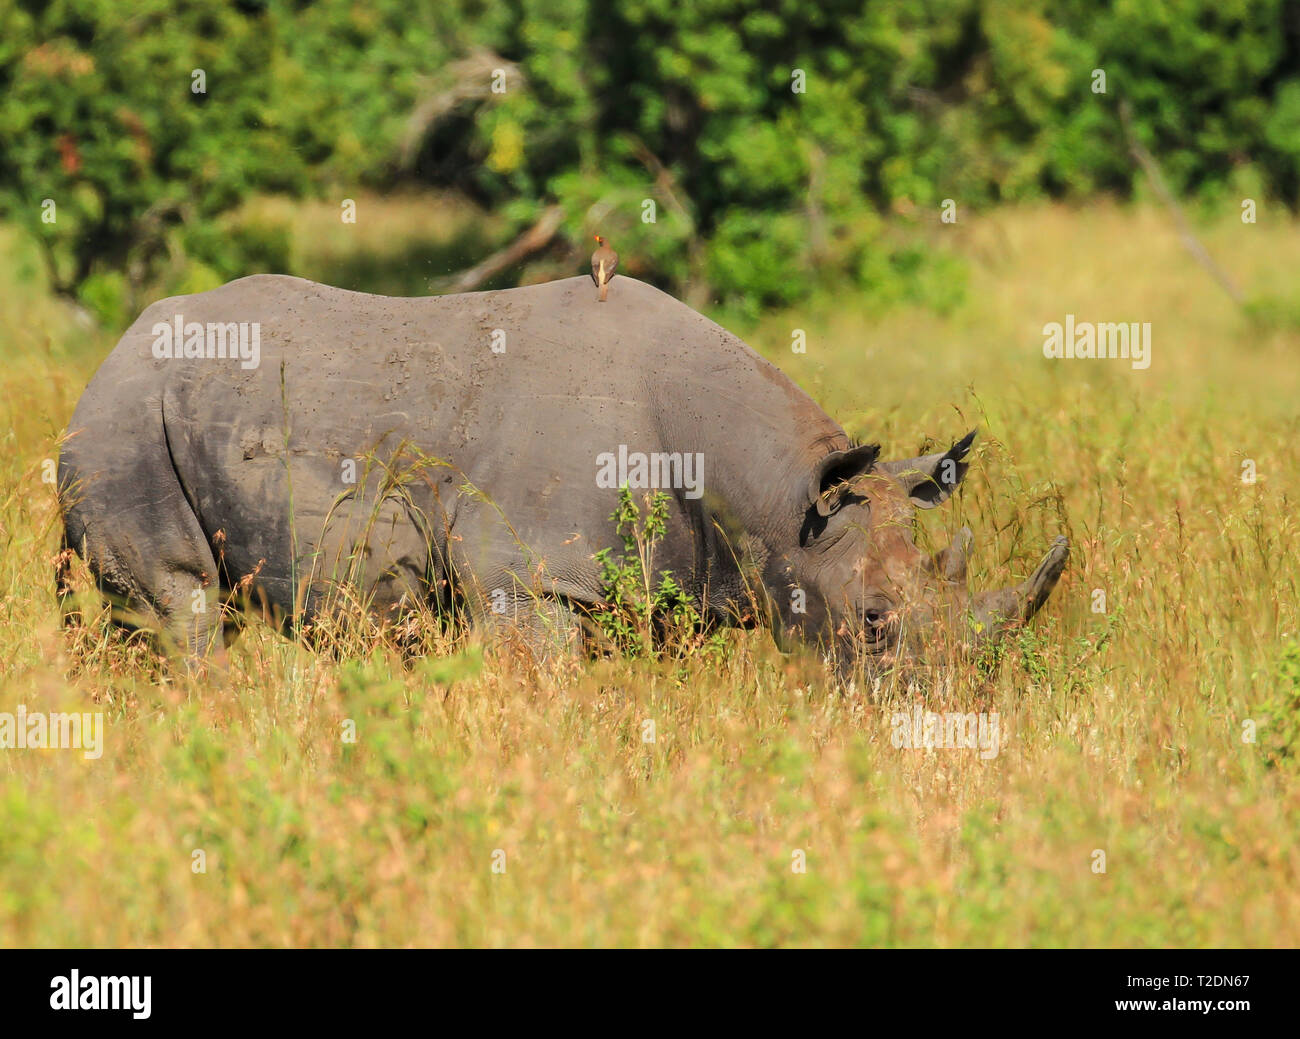 Rhinocéros noir ou à lèvres, (Diceros bicornis) broutant au parc national du lac Nakuru, Kenya, Afrique. Espèces en danger critique d'extinction vues en safari Banque D'Images